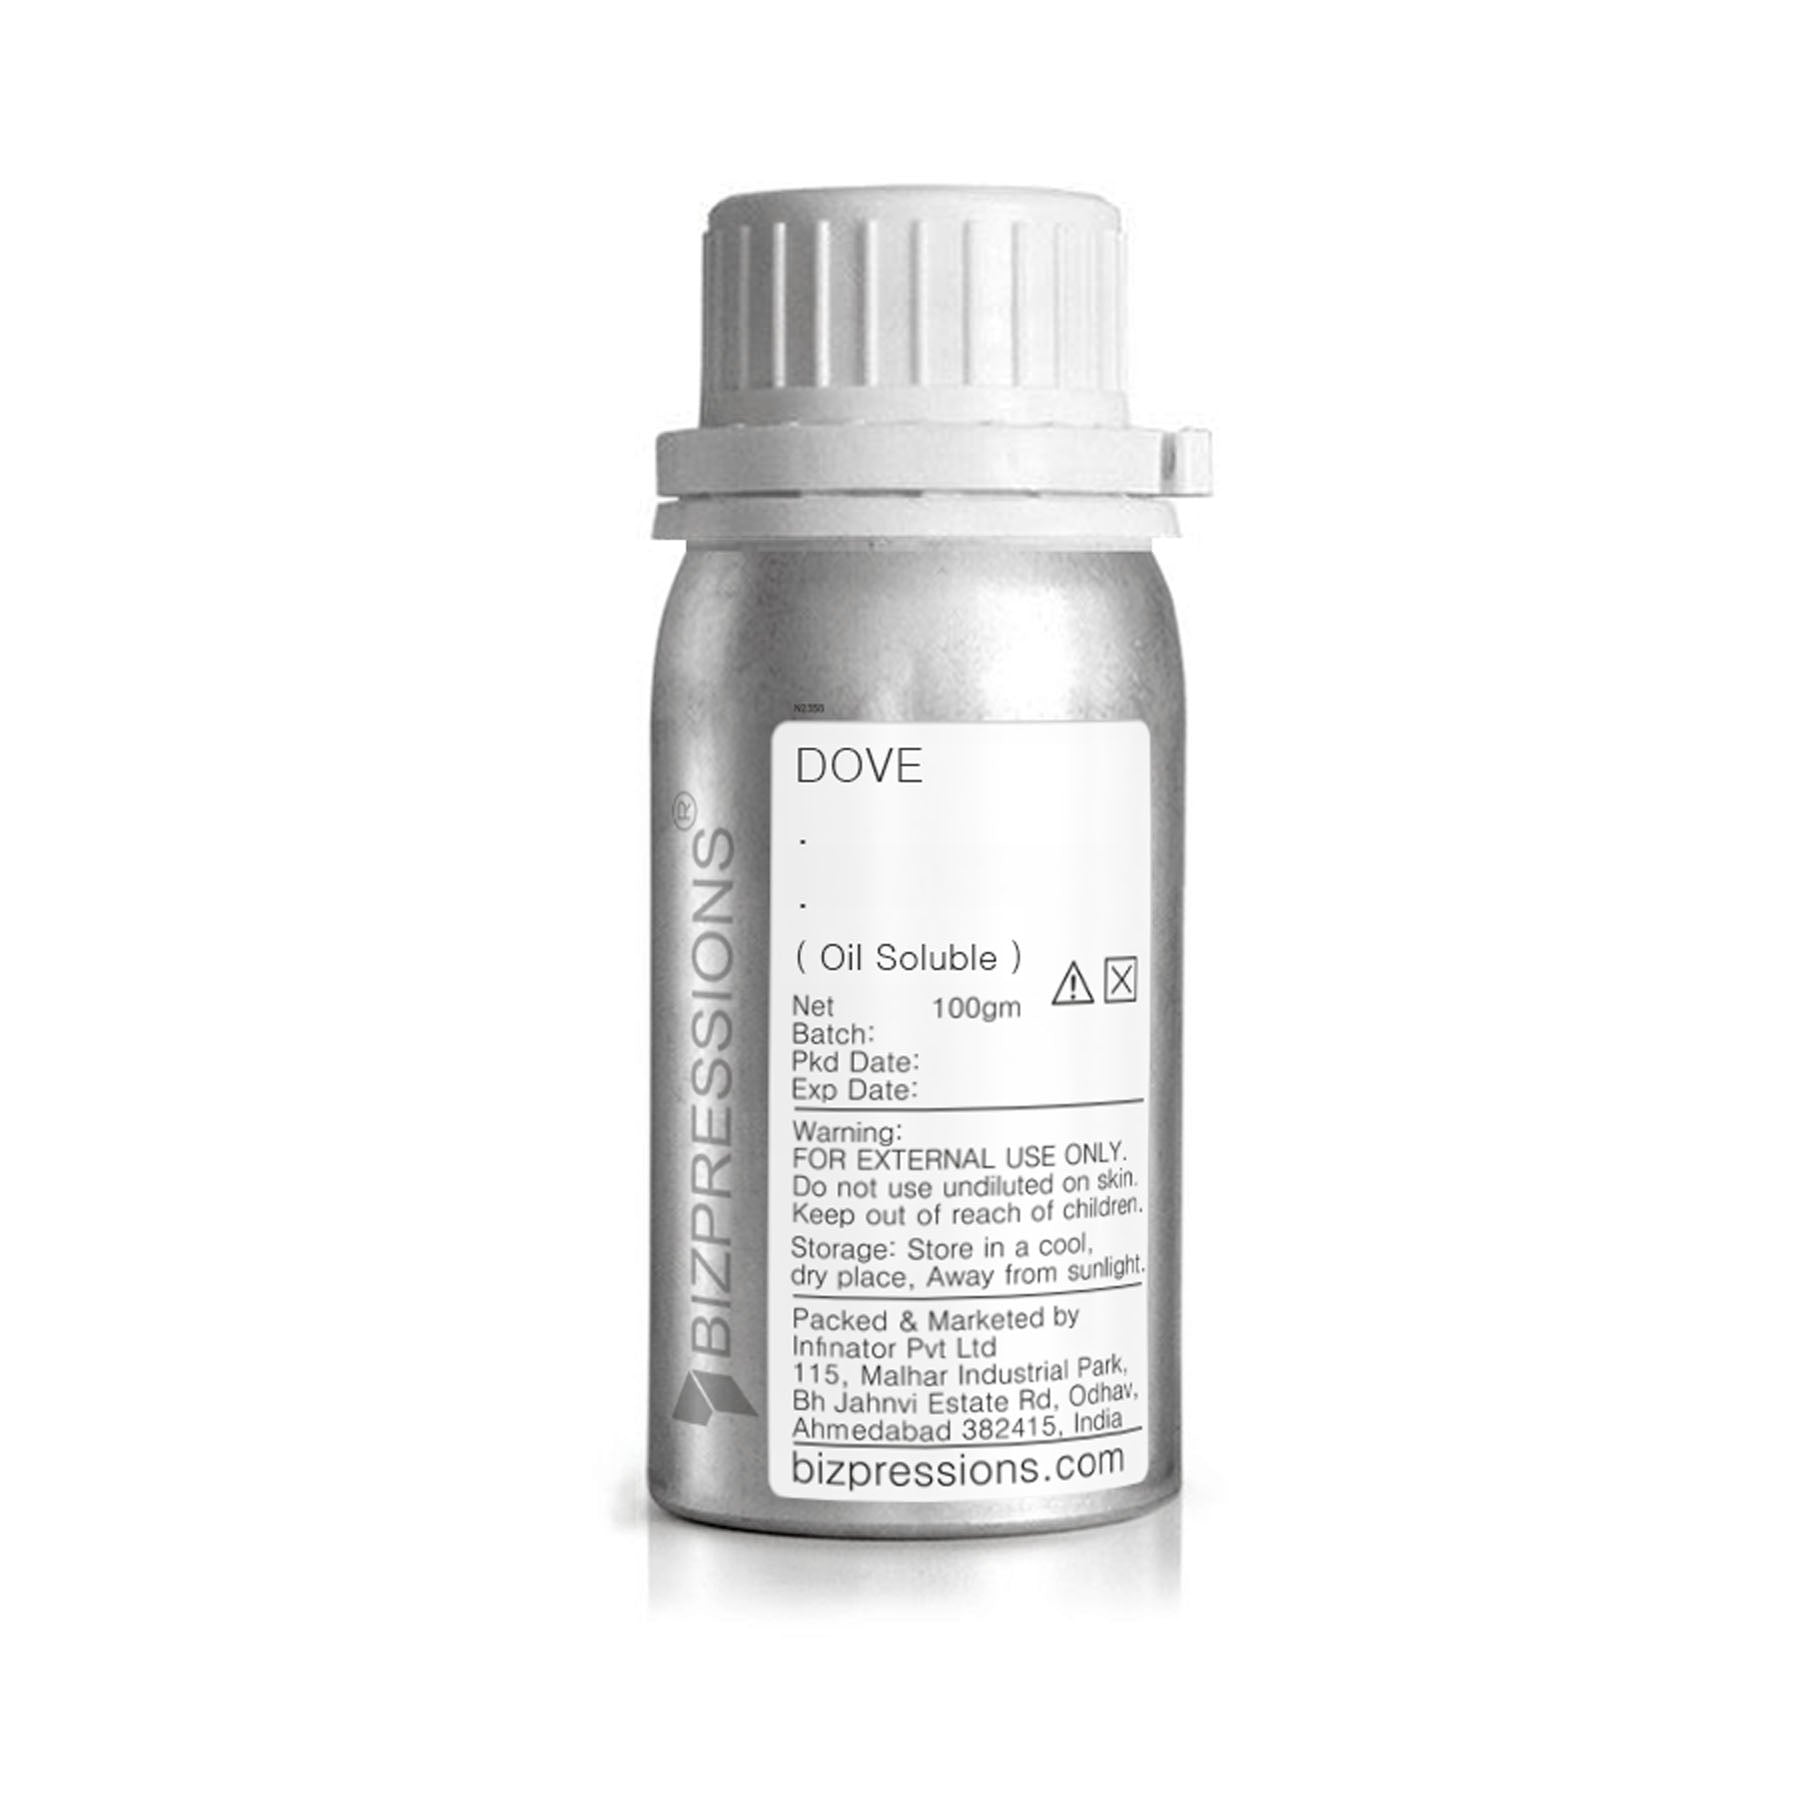 DOVE - Fragrance ( Oil Soluble ) - 100 gm